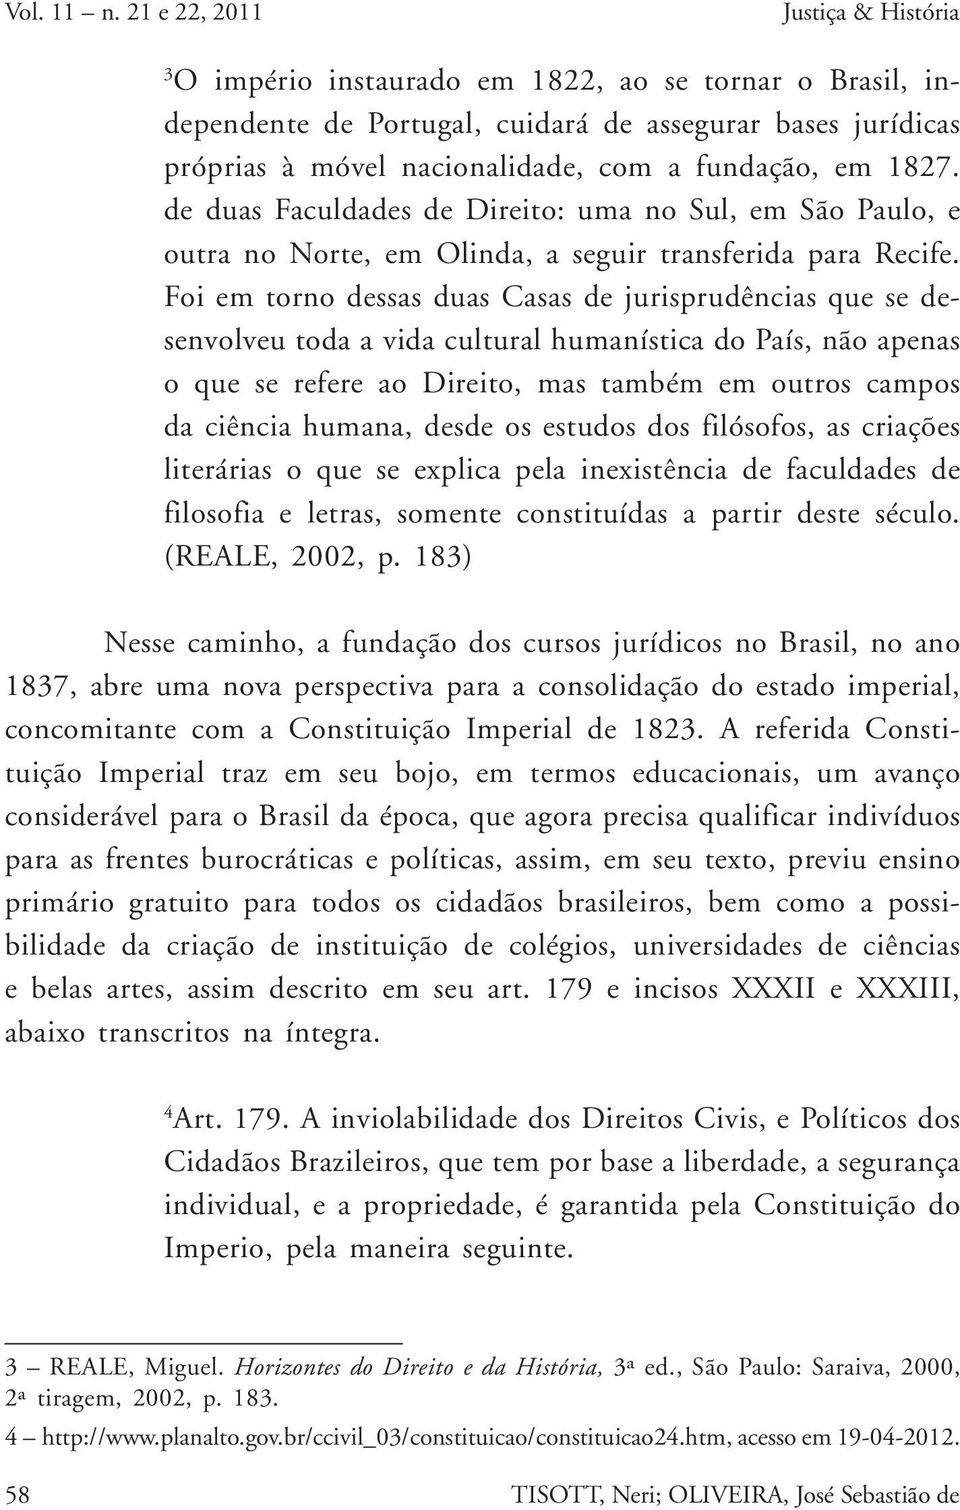 em 1827. de duas Faculdades de Direito: uma no Sul, em São Paulo, e outra no Norte, em Olinda, a seguir transferida para Recife.